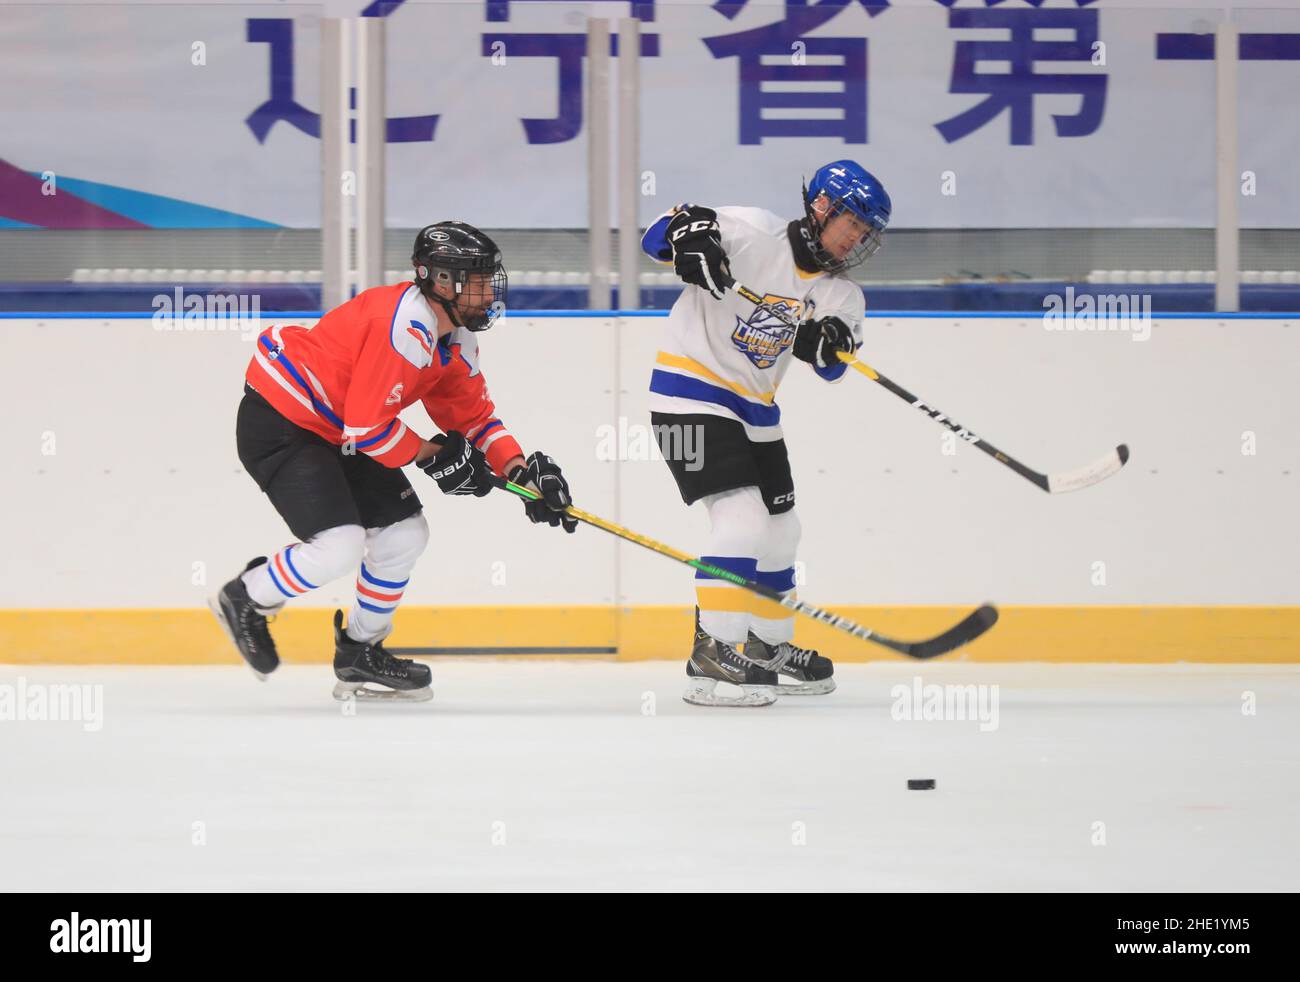 (220108) -- SHENYANG, 8. Januar 2022 (Xinhua) -- Ryan (L) spielt Eishockey mit Freunden in Shenyang, nordöstlich der Provinz Liaoning, 6. Januar 2022. Ryan ist ein 38-jähriger Kanadier, der in Shenyang lebt. Ryan kam 2013 zum ersten Mal nach China und arbeitet nun als Ingenieur bei einem Unternehmen in Shenyang. Ryan ist ein begeisterter Wintersportler, vor allem Eishockey. Durch das wöchentliche Eishockey-Training hat sich Ryan mit vielen lokalen Eishockey-Liebhabern angefreundet. Während sich die Olympischen Spiele 2022 in Peking nähern, freut sich Ryan auf eine großartige Leistung aller Athleten. Er wünscht dem Pekinger WI Stockfoto